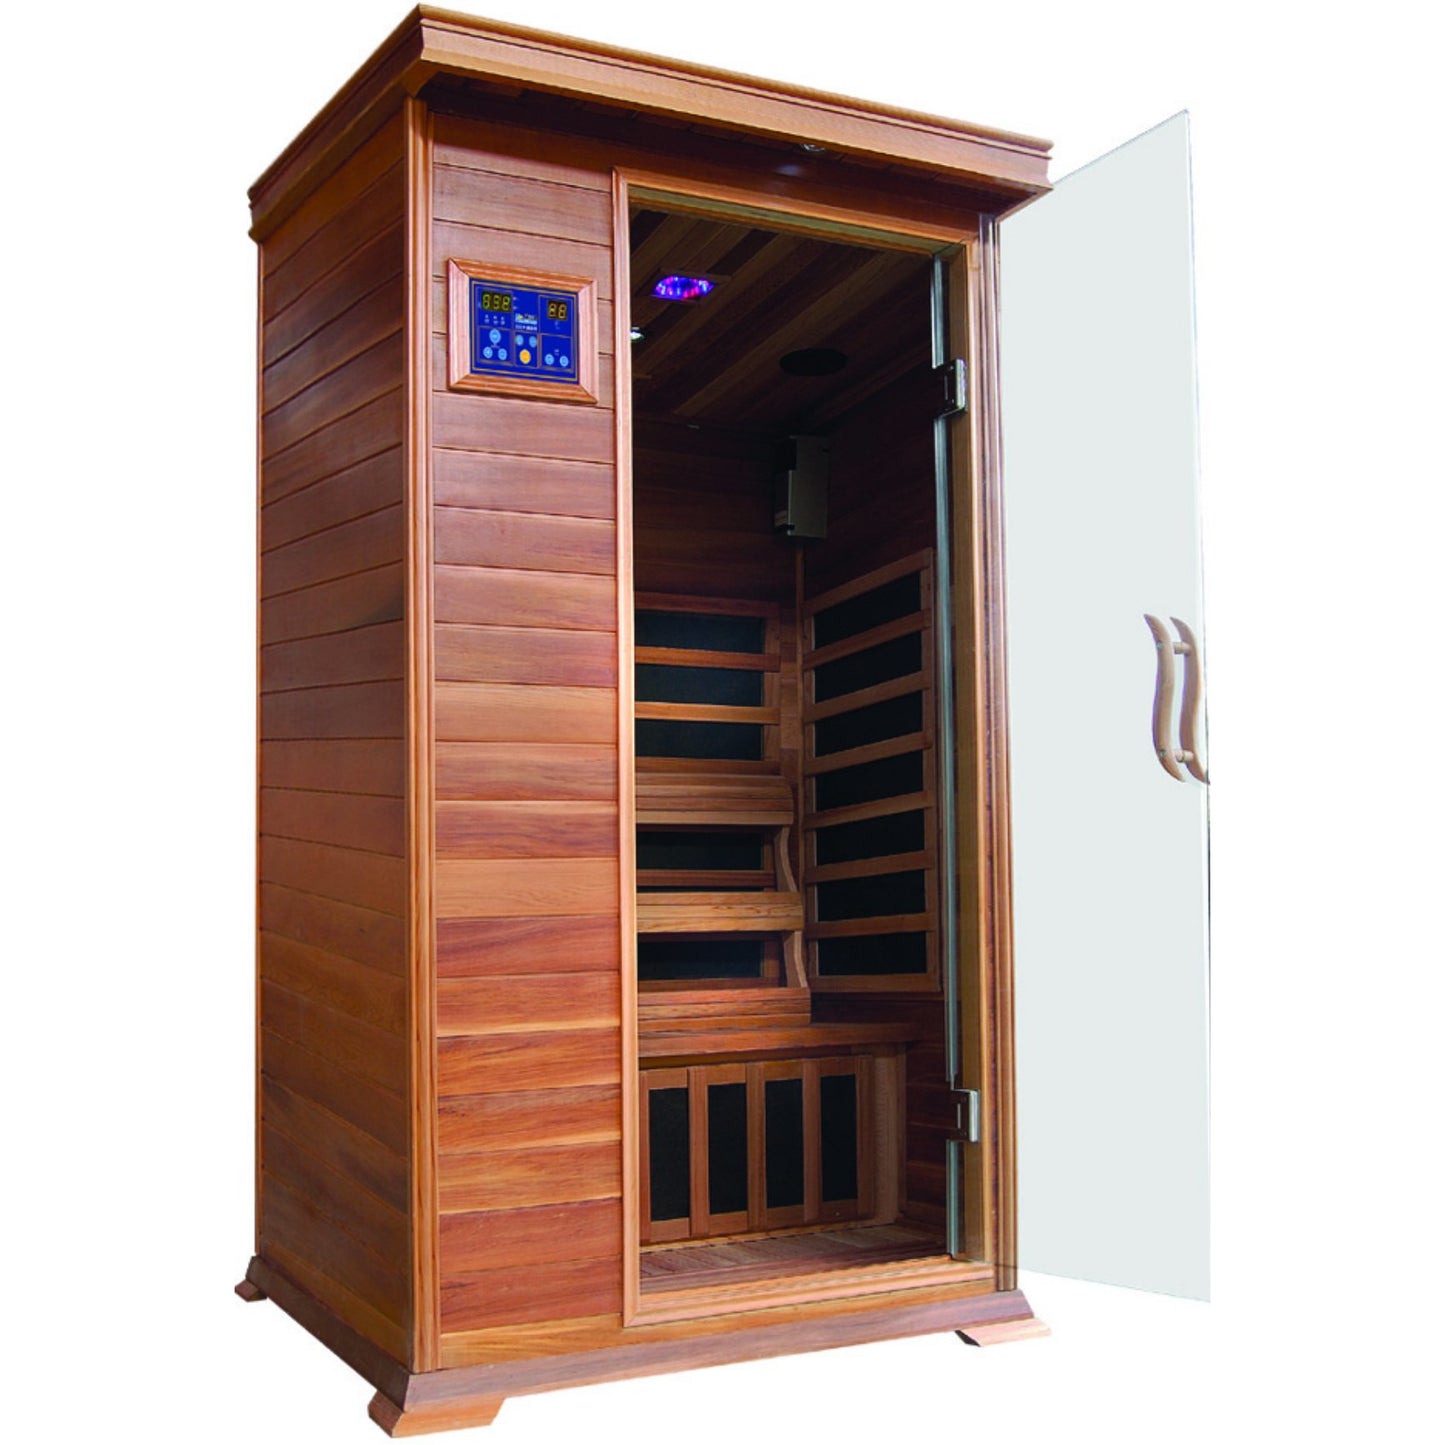 Sunray Sedona 1 Person Cedar Sauna W/ Carbon Heaters